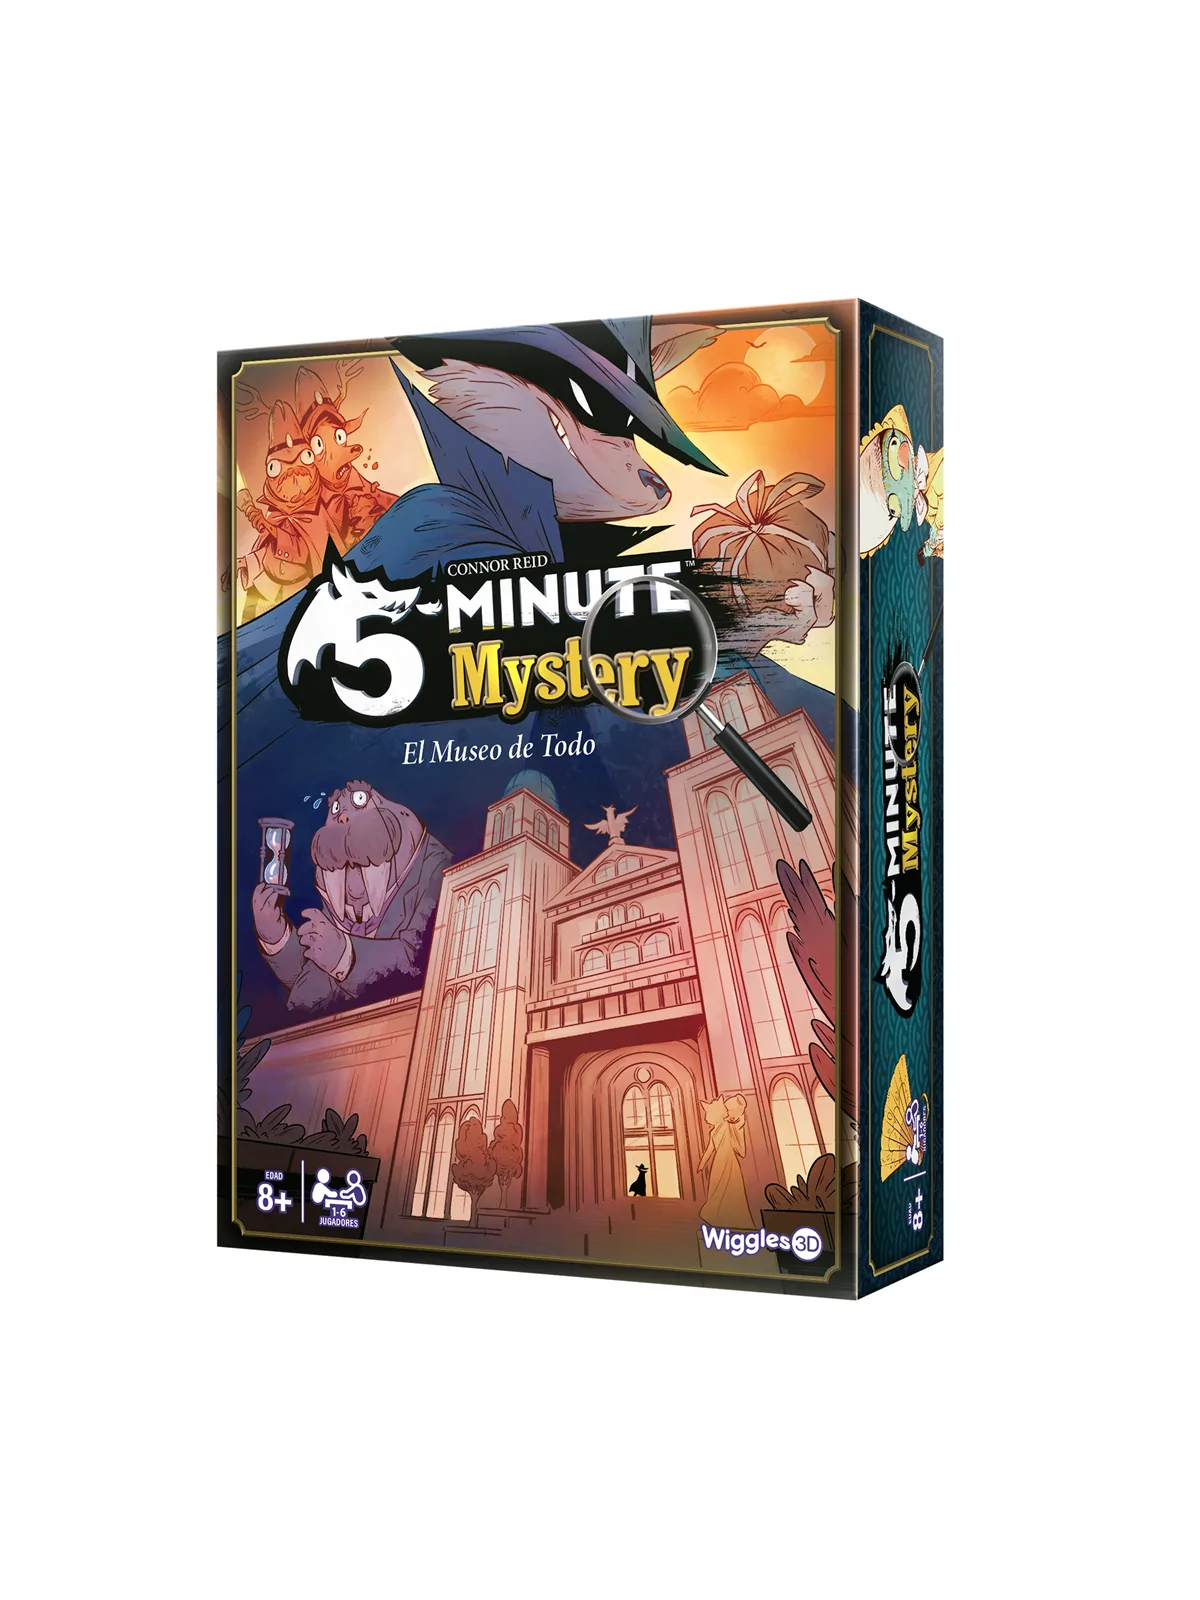 Comprar 5 Minute Mystery barato al mejor precio 26,99 € de 3D Wiggles